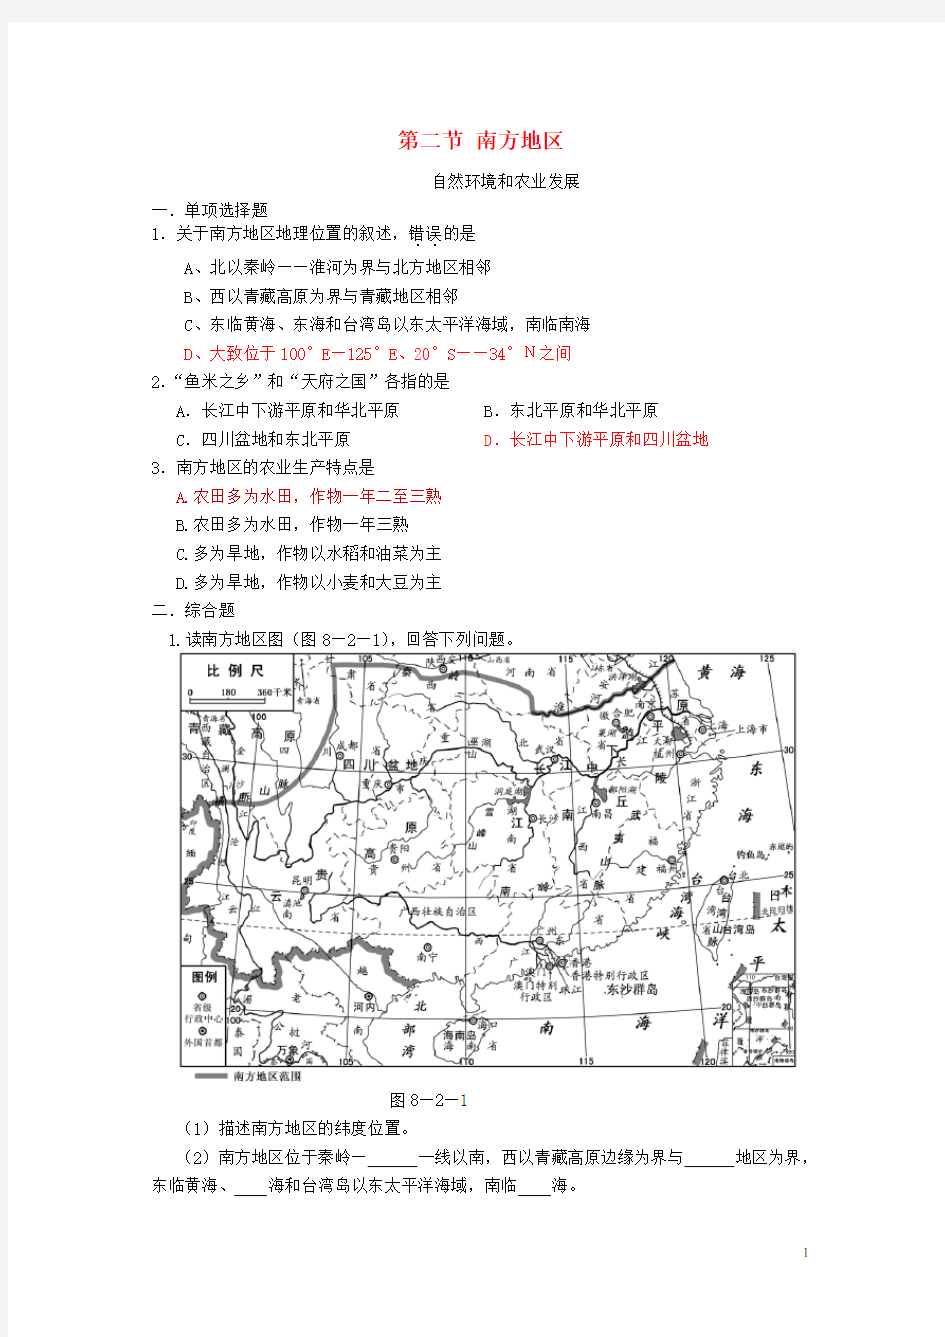 七年级地理下册 第七章 认识中国的地理区域 南方地区精选练习 中图版